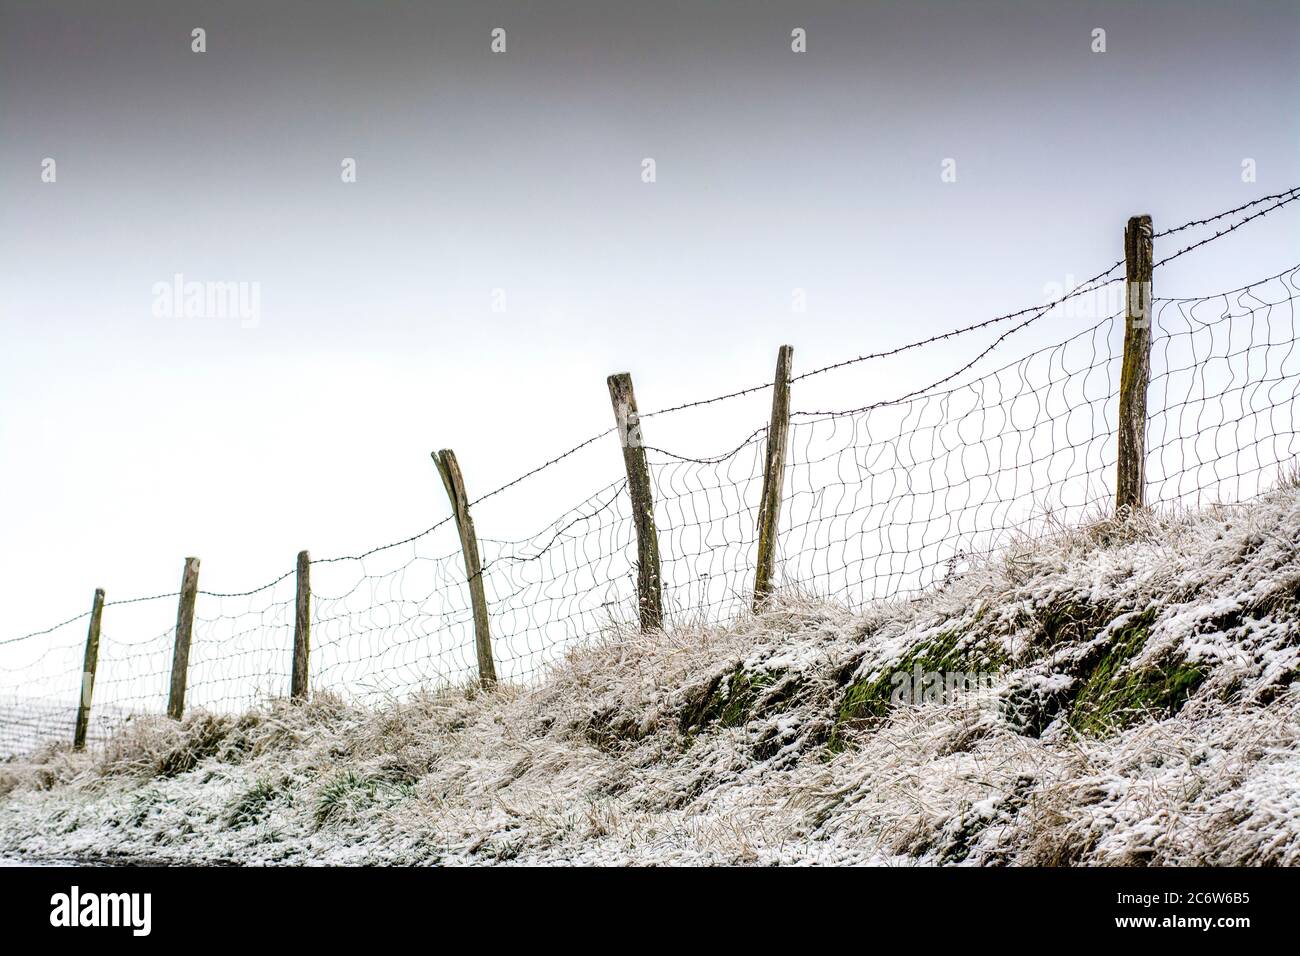 Winter fence, Puy de Dome, Auvergne, France Stock Photo